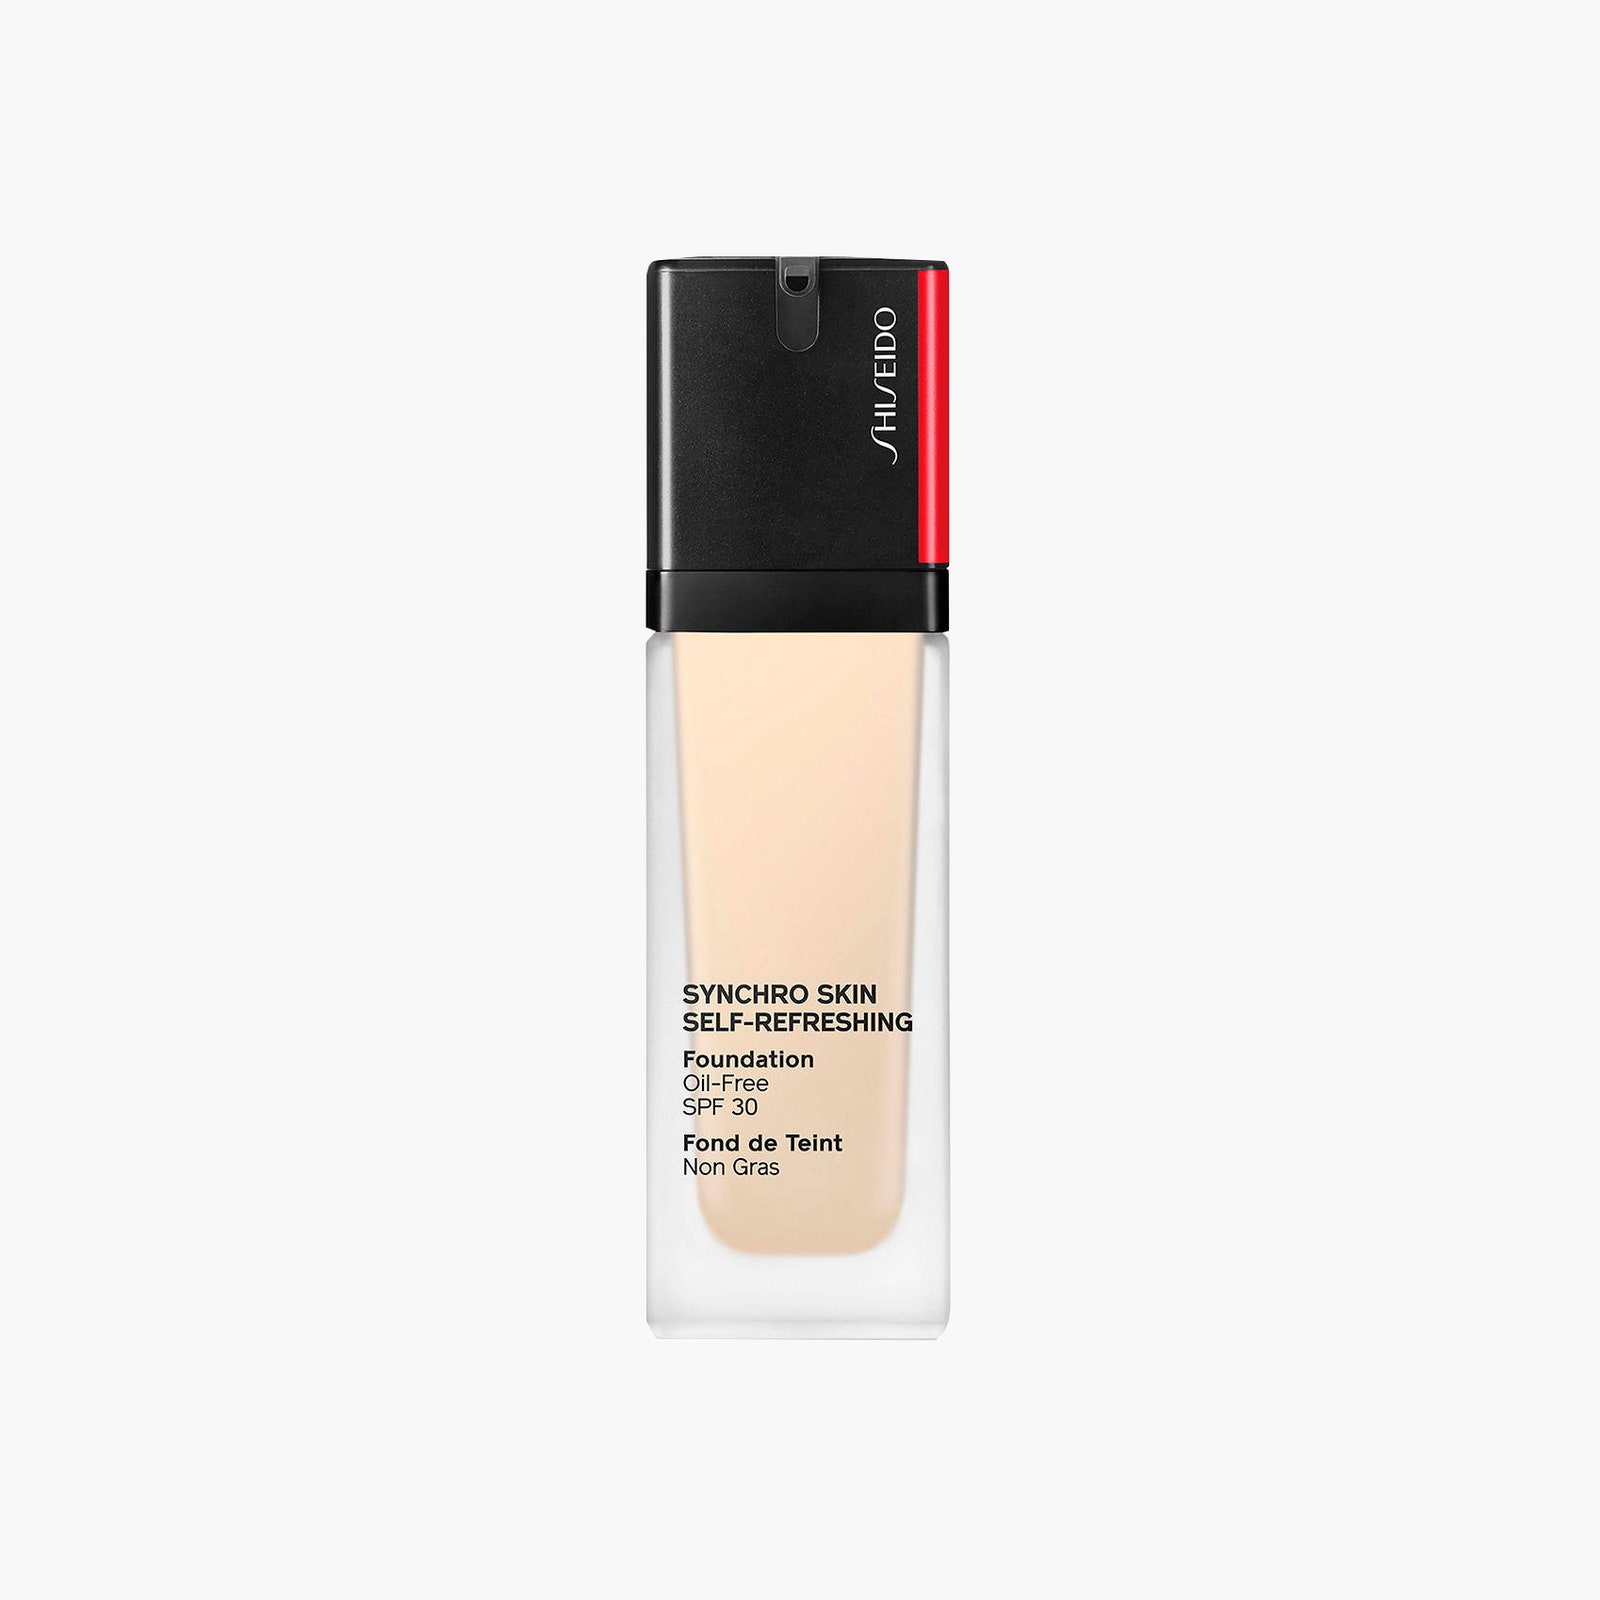 Стойкое тональное средство Synchro Skin SelfRefreshing Foundation Shiseido 3990 рублей